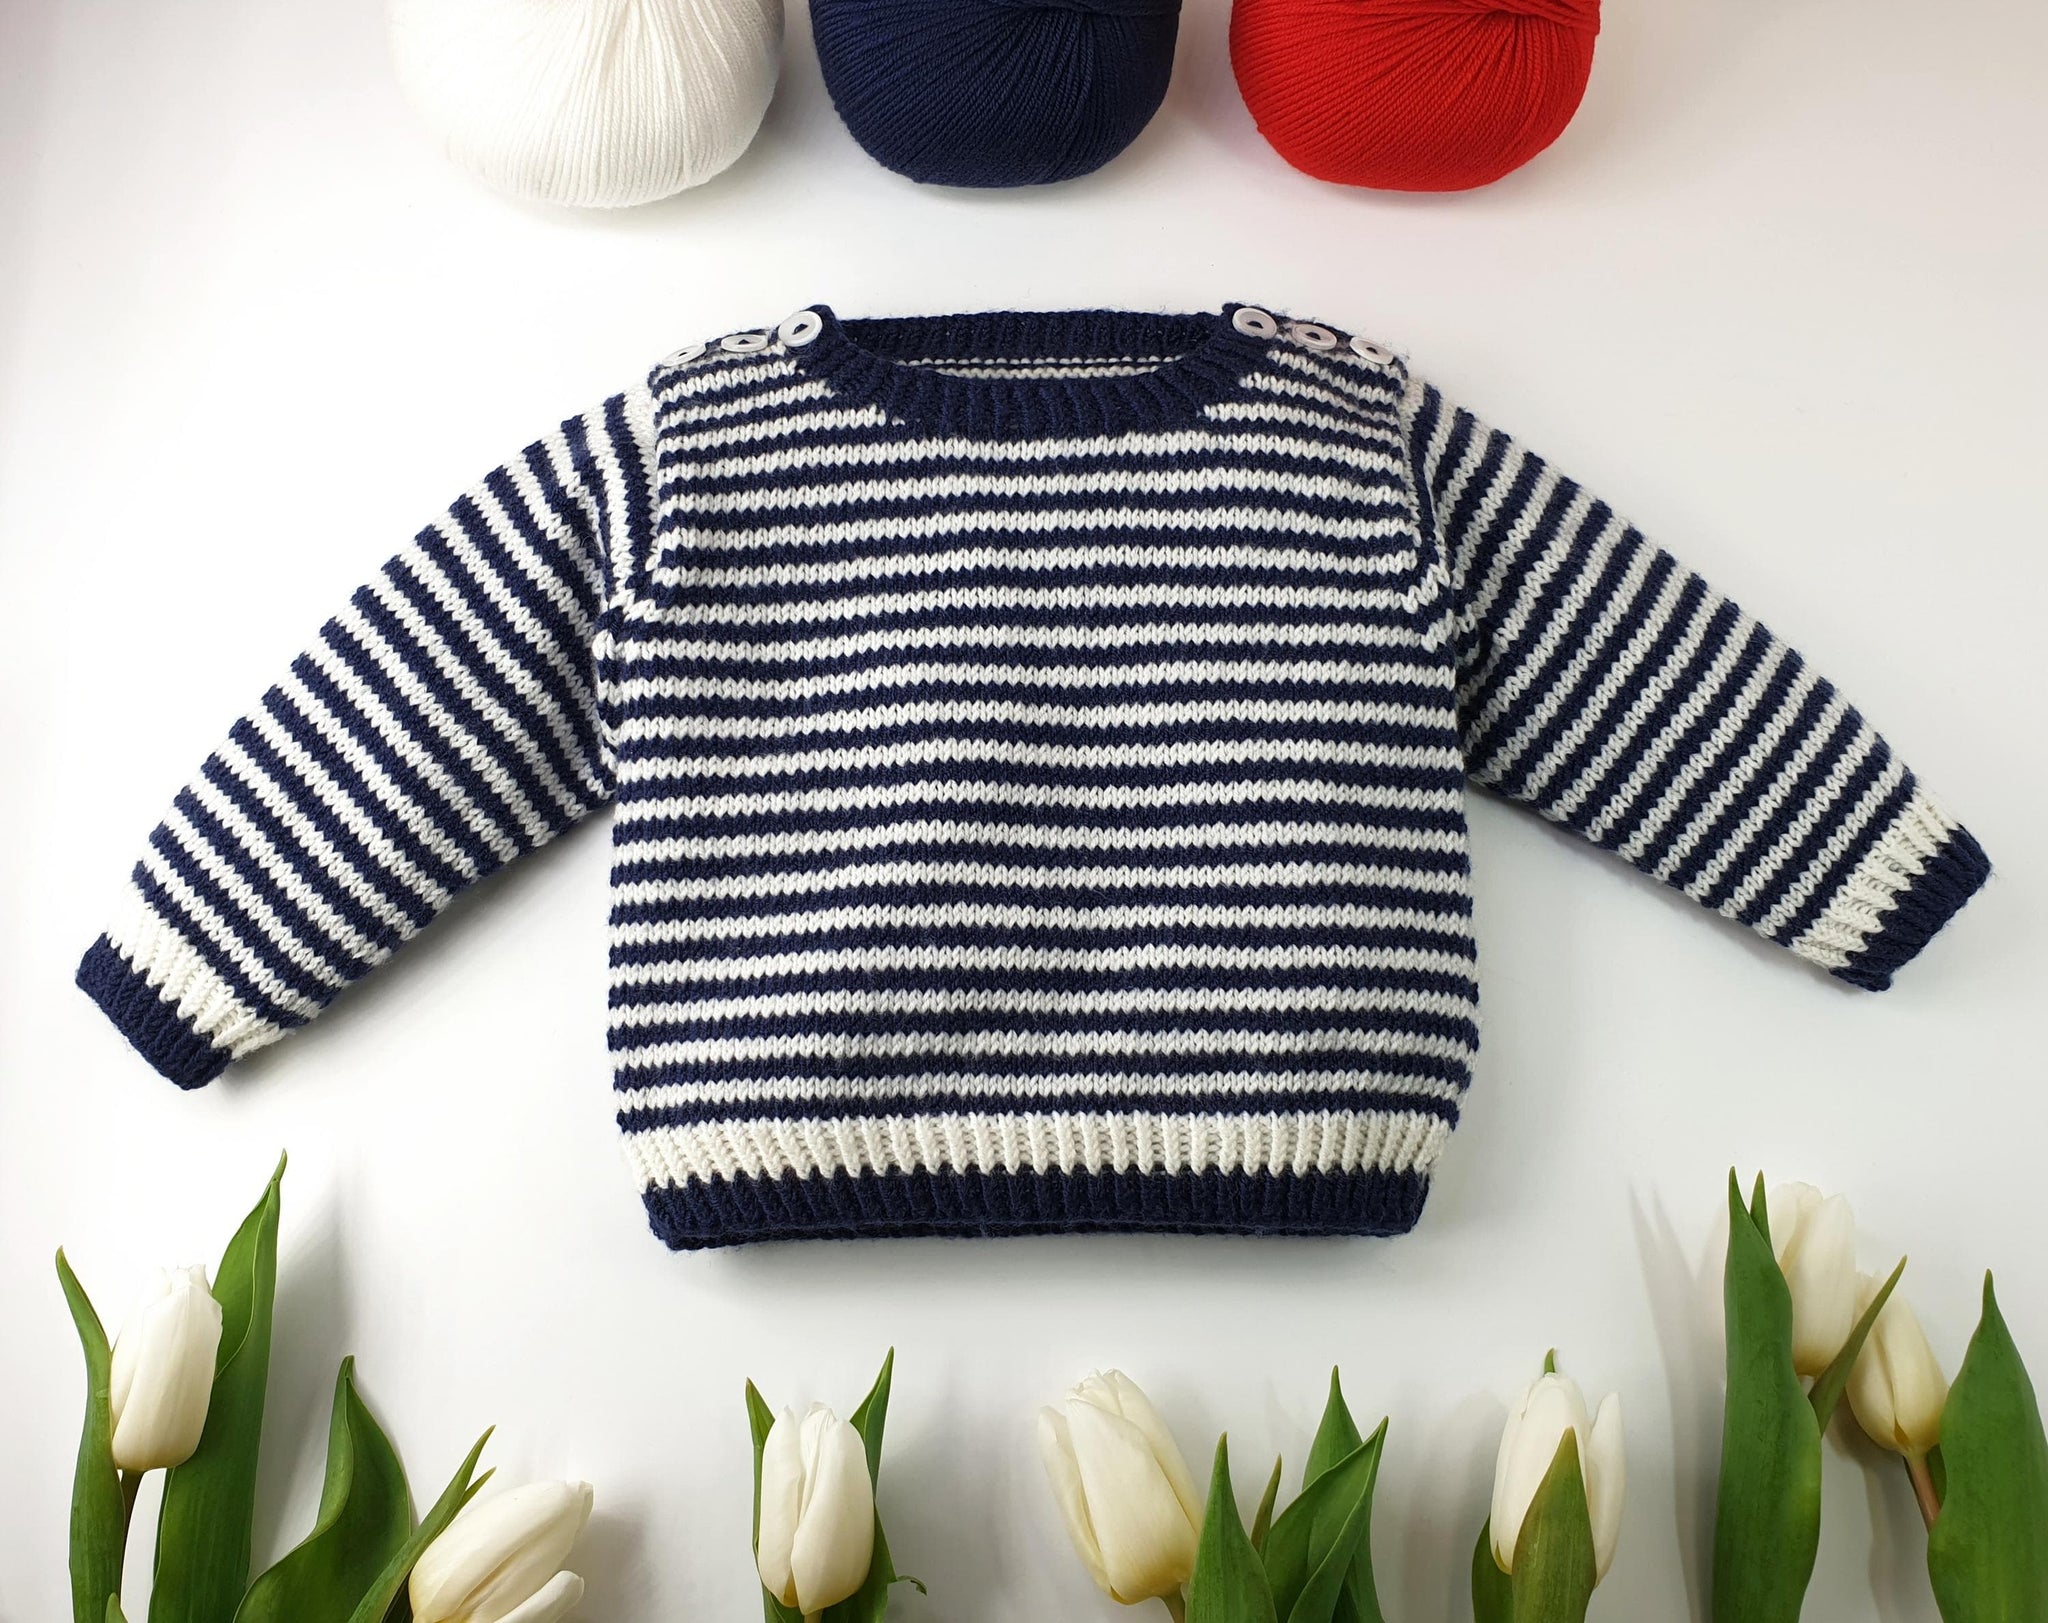 Moufles de bébé : patron de tricot - Marie Claire